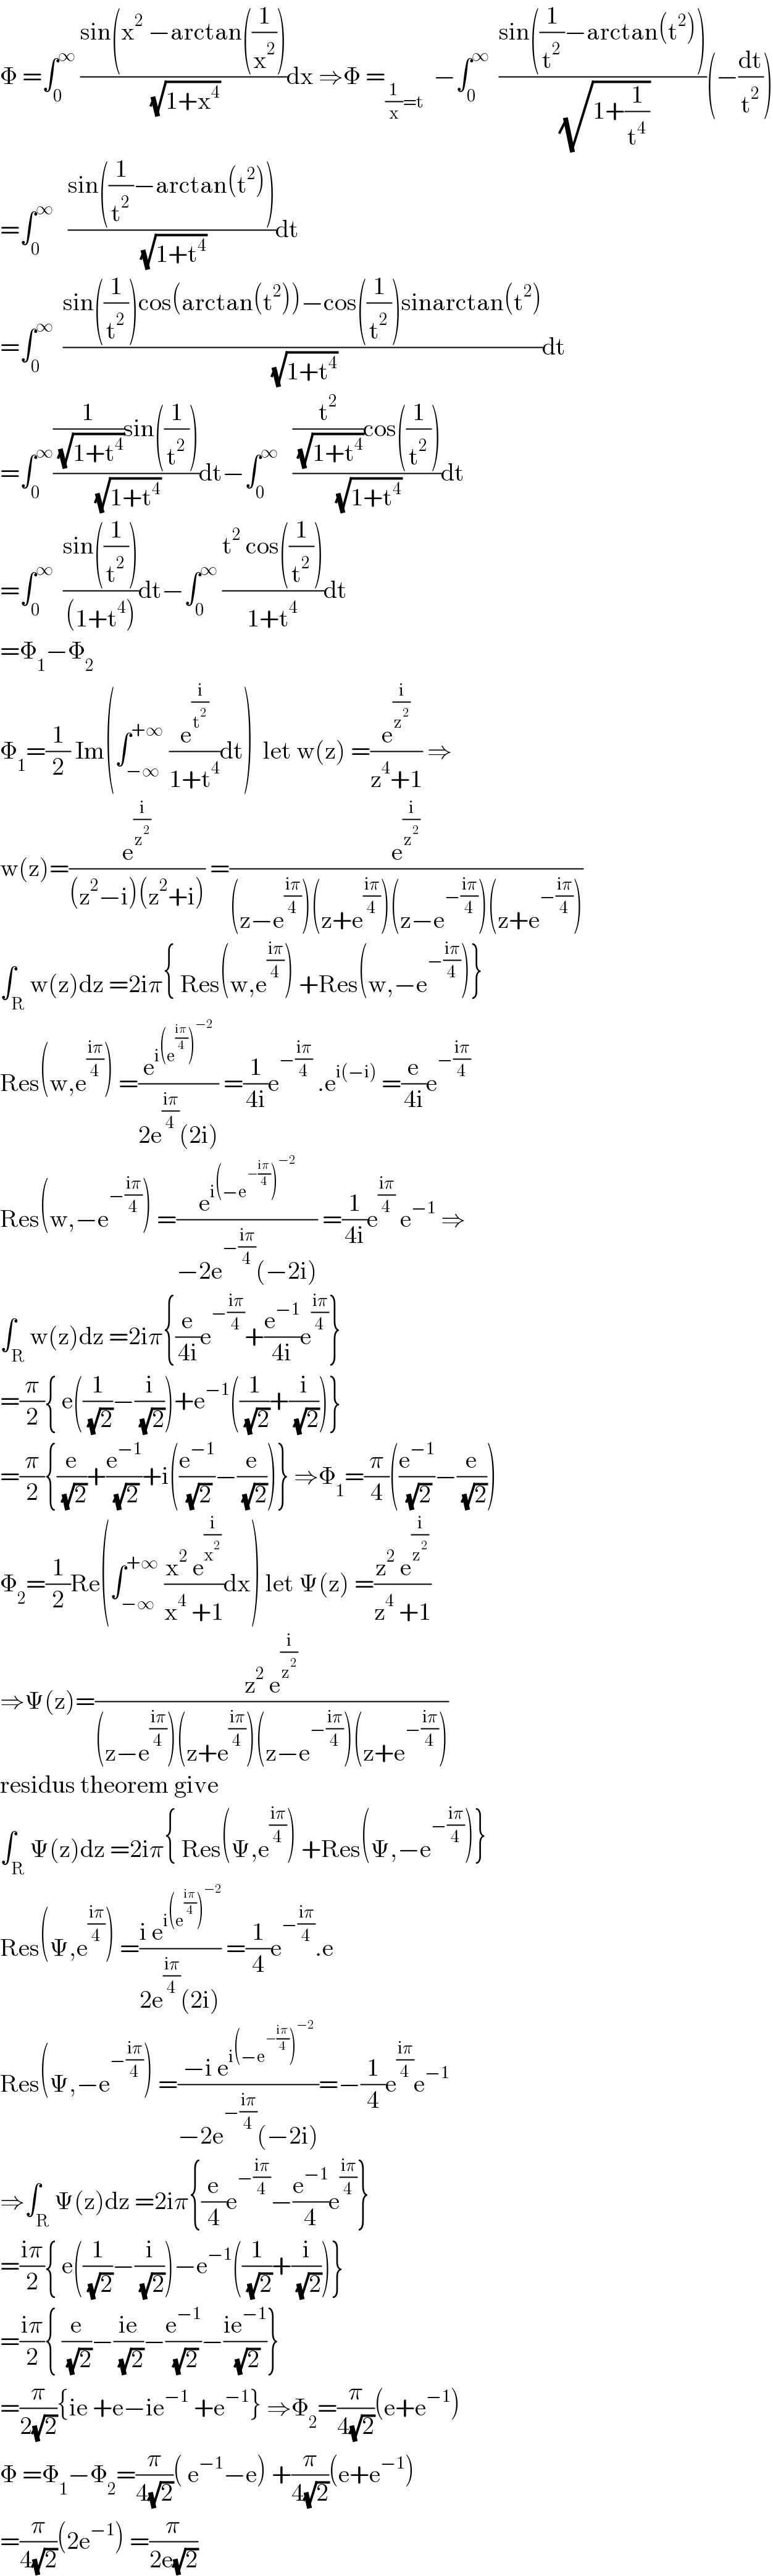 Φ =∫_0 ^∞  ((sin(x^2  −arctan((1/x^2 )))/( (√(1+x^4 ))))dx ⇒Φ =_((1/x)=t)   −∫_0 ^∞   ((sin((1/t^2 )−arctan(t^2 )))/( (√(1+(1/t^4 )))))(−(dt/t^2 ))  =∫_0 ^∞    ((sin((1/t^2 )−arctan(t^2 )))/( (√(1+t^4 ))))dt  =∫_0 ^∞   ((sin((1/t^2 ))cos(arctan(t^2 ))−cos((1/t^2 ))sinarctan(t^2 ))/( (√(1+t^4 ))))dt  =∫_0 ^∞ (((1/( (√(1+t^4 ))))sin((1/t^2 )))/( (√(1+t^4 ))))dt−∫_0 ^∞    (((t^2 /( (√(1+t^4 ))))cos((1/t^2 )))/( (√(1+t^4 ))))dt  =∫_0 ^∞   ((sin((1/t^2 )))/((1+t^4 )))dt−∫_0 ^∞  ((t^2  cos((1/t^2 )))/(1+t^4 ))dt  =Φ_1 −Φ_2   Φ_1 =(1/2) Im(∫_(−∞) ^(+∞)  (e^(i/t^2 ) /(1+t^4 ))dt)  let w(z) =(e^(i/z^2 ) /(z^4 +1)) ⇒  w(z)=(e^(i/z^2 ) /((z^2 −i)(z^2 +i))) =(e^(i/z^2 ) /((z−e^((iπ)/4) )(z+e^((iπ)/4) )(z−e^(−((iπ)/4)) )(z+e^(−((iπ)/4)) )))  ∫_R w(z)dz =2iπ{ Res(w,e^((iπ)/4) ) +Res(w,−e^(−((iπ)/4)) )}  Res(w,e^((iπ)/4) ) =(e^(i(e^((iπ)/4) )^(−2) ) /(2e^((iπ)/4) (2i))) =(1/(4i))e^(−((iπ)/4))  .e^(i(−i))  =(e/(4i))e^(−((iπ)/4))   Res(w,−e^(−((iπ)/4)) ) =(e^(i(−e^(−((iπ)/4)) )^(−2) ) /(−2e^(−((iπ)/4)) (−2i))) =(1/(4i))e^((iπ)/4)  e^(−1)  ⇒  ∫_R w(z)dz =2iπ{(e/(4i))e^(−((iπ)/4)) +(e^(−1) /(4i))e^((iπ)/4) }  =(π/2){ e((1/( (√2)))−(i/( (√2))))+e^(−1) ((1/( (√2)))+(i/( (√2))))}  =(π/2){(e/( (√2)))+(e^(−1) /( (√2)))+i((e^(−1) /( (√2)))−(e/( (√2))))} ⇒Φ_1 =(π/4)((e^(−1) /( (√2)))−(e/( (√2))))  Φ_2 =(1/2)Re(∫_(−∞) ^(+∞)  ((x^2  e^(i/x^2 ) )/(x^4  +1))dx) let Ψ(z) =((z^2  e^(i/z^2 ) )/(z^4  +1))  ⇒Ψ(z)=((z^2  e^(i/z^2 ) )/((z−e^((iπ)/4) )(z+e^((iπ)/4) )(z−e^(−((iπ)/4)) )(z+e^(−((iπ)/4)) )))  residus theorem give  ∫_R Ψ(z)dz =2iπ{ Res(Ψ,e^((iπ)/4) ) +Res(Ψ,−e^(−((iπ)/4)) )}  Res(Ψ,e^((iπ)/4) ) =((i e^(i(e^((iπ)/4) )^(−2) ) )/(2e^((iπ)/4) (2i))) =(1/4)e^(−((iπ)/4)) .e  Res(Ψ,−e^(−((iπ)/4)) ) =((−i e^(i(−e^(−((iπ)/4)) )^(−2) ) )/(−2e^(−((iπ)/4)) (−2i)))=−(1/4)e^((iπ)/4) e^(−1)   ⇒∫_R Ψ(z)dz =2iπ{(e/4)e^(−((iπ)/4)) −(e^(−1) /4)e^((iπ)/4) }  =((iπ)/2){ e((1/( (√2)))−(i/( (√2))))−e^(−1) ((1/( (√2)))+(i/( (√2))))}  =((iπ)/2){ (e/( (√2)))−((ie)/( (√2)))−(e^(−1) /( (√2)))−((ie^(−1) )/( (√2)))}  =(π/(2(√2))){ie +e−ie^(−1)  +e^(−1) } ⇒Φ_2 =(π/(4(√2)))(e+e^(−1) )  Φ =Φ_1 −Φ_2 =(π/(4(√2)))( e^(−1) −e) +(π/(4(√2)))(e+e^(−1) )  =(π/(4(√2)))(2e^(−1) ) =(π/(2e(√2)))   